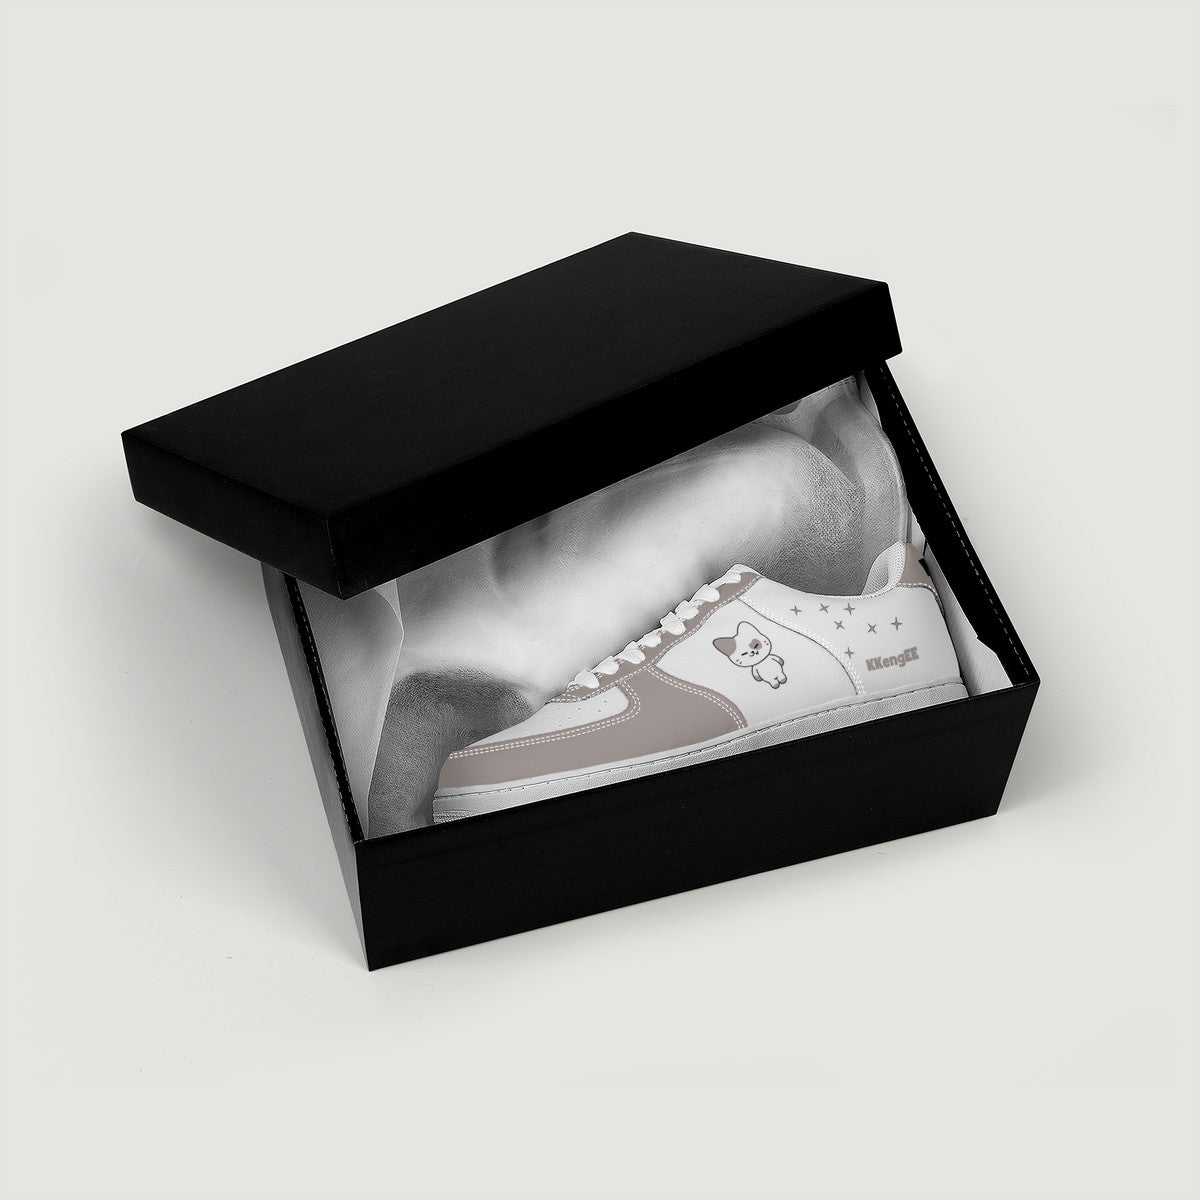 Itzy Yeji Sneakers - Twinzy KKengEE  Low Top Unisex Sneaker